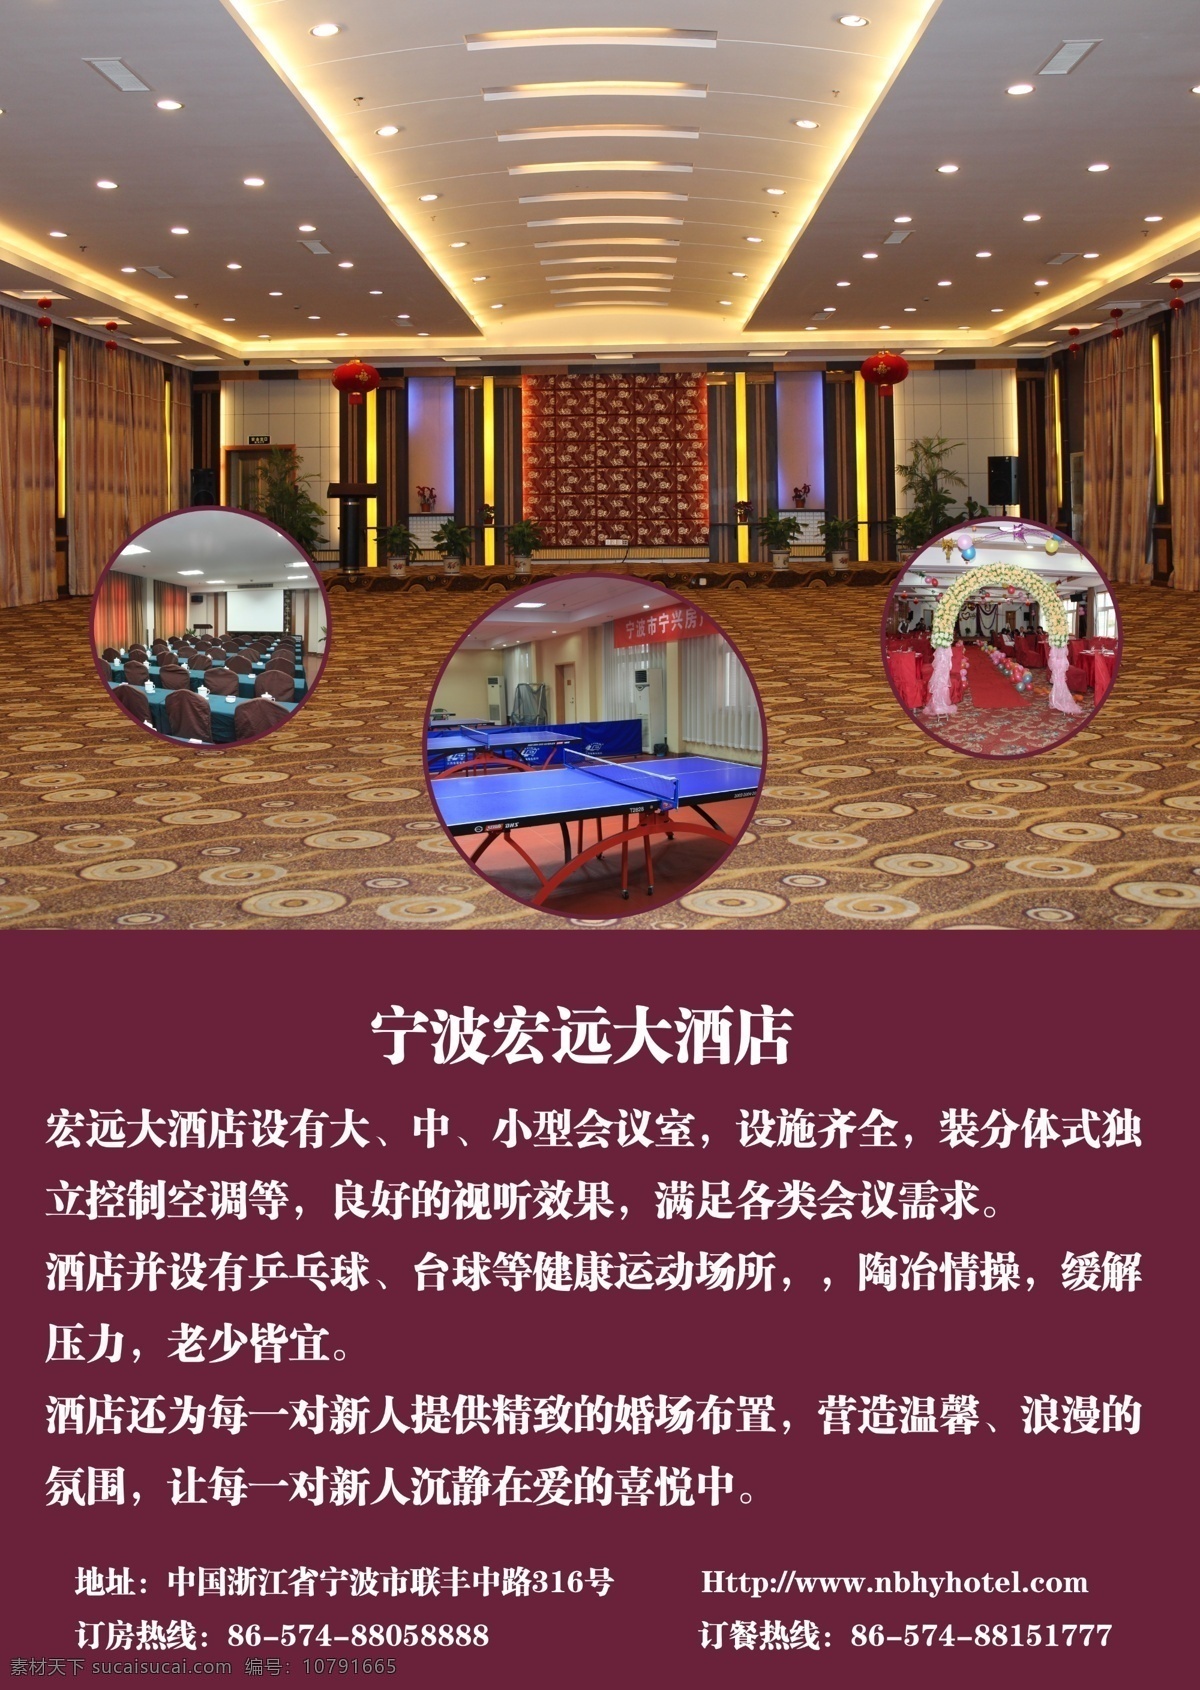 电梯海报 酒店介绍 会议 婚宴 乒乓球室 会议室 广告设计模板 源文件